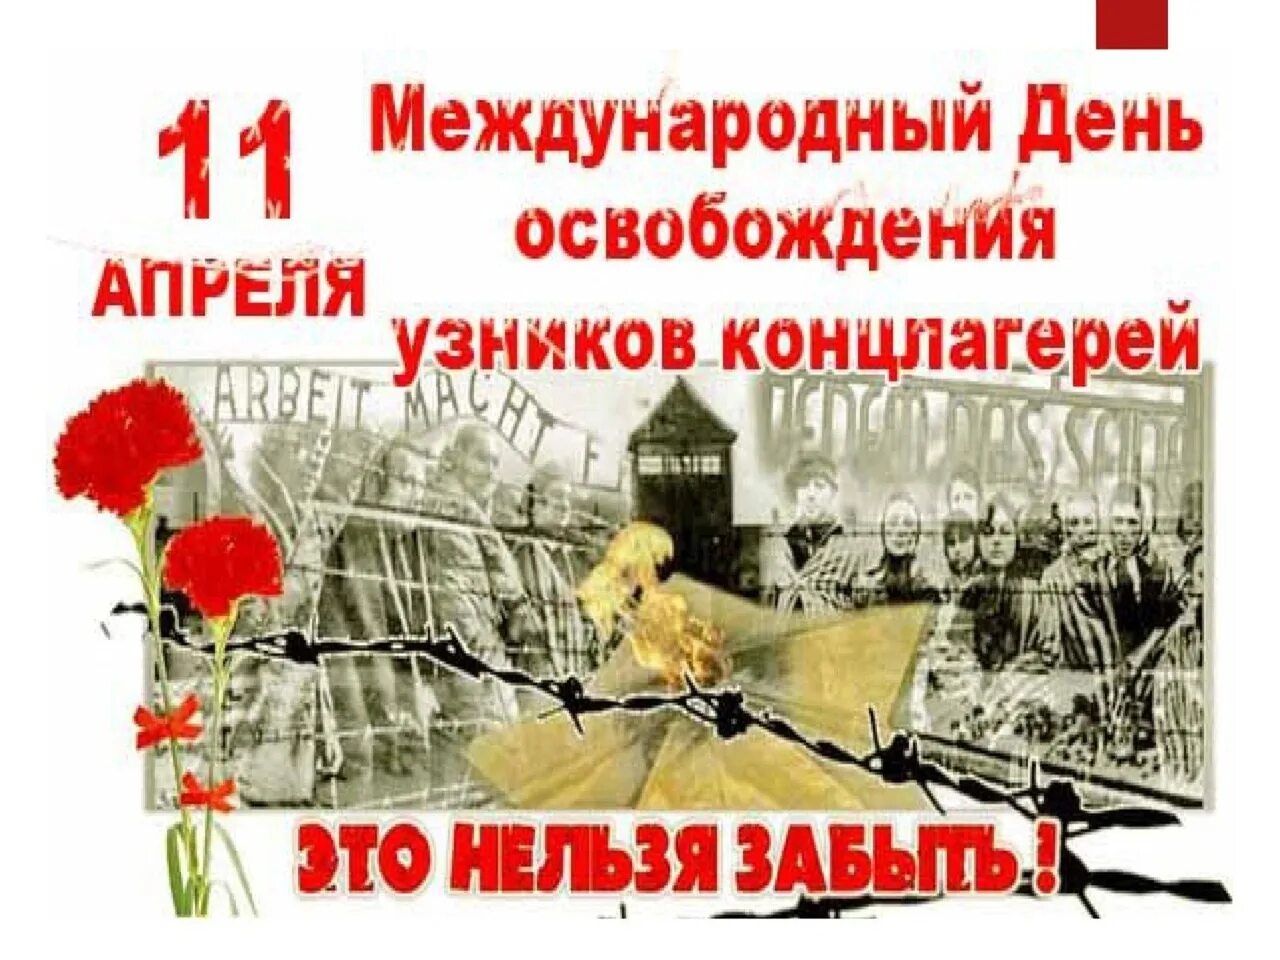 11 Апреля день Международный освобождения. День освобождения узников фашистских лагерей. Международный день освобождения узников. День освобождения узников концлагерей.